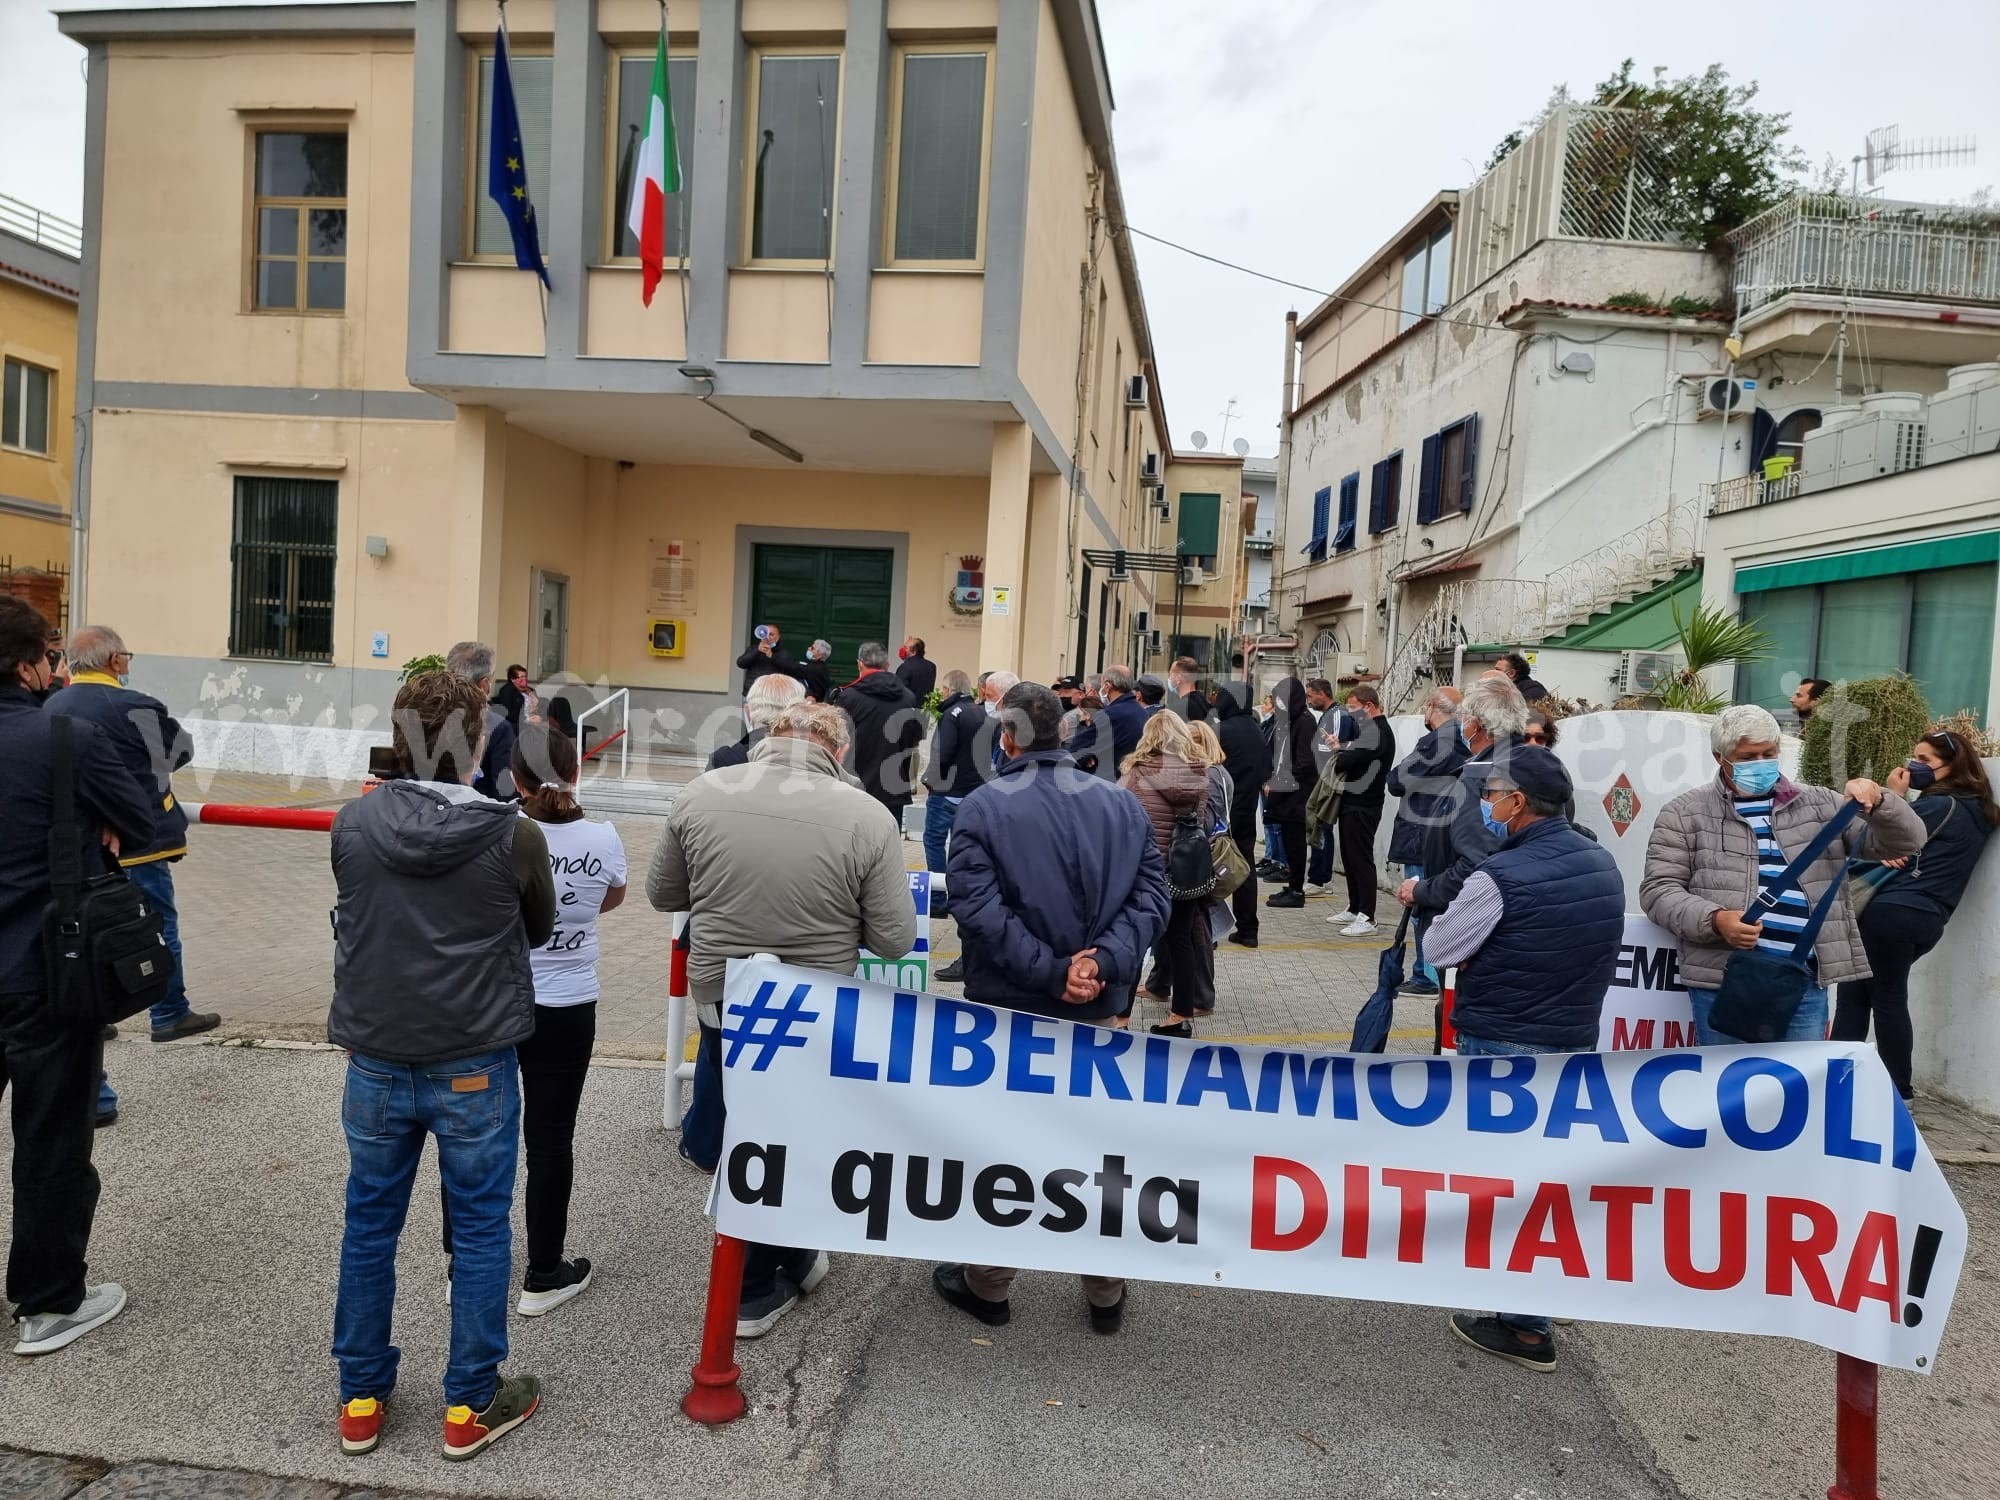 A Bacoli manifestazione contro il sindaco Josi Della Ragione – LE FOTO